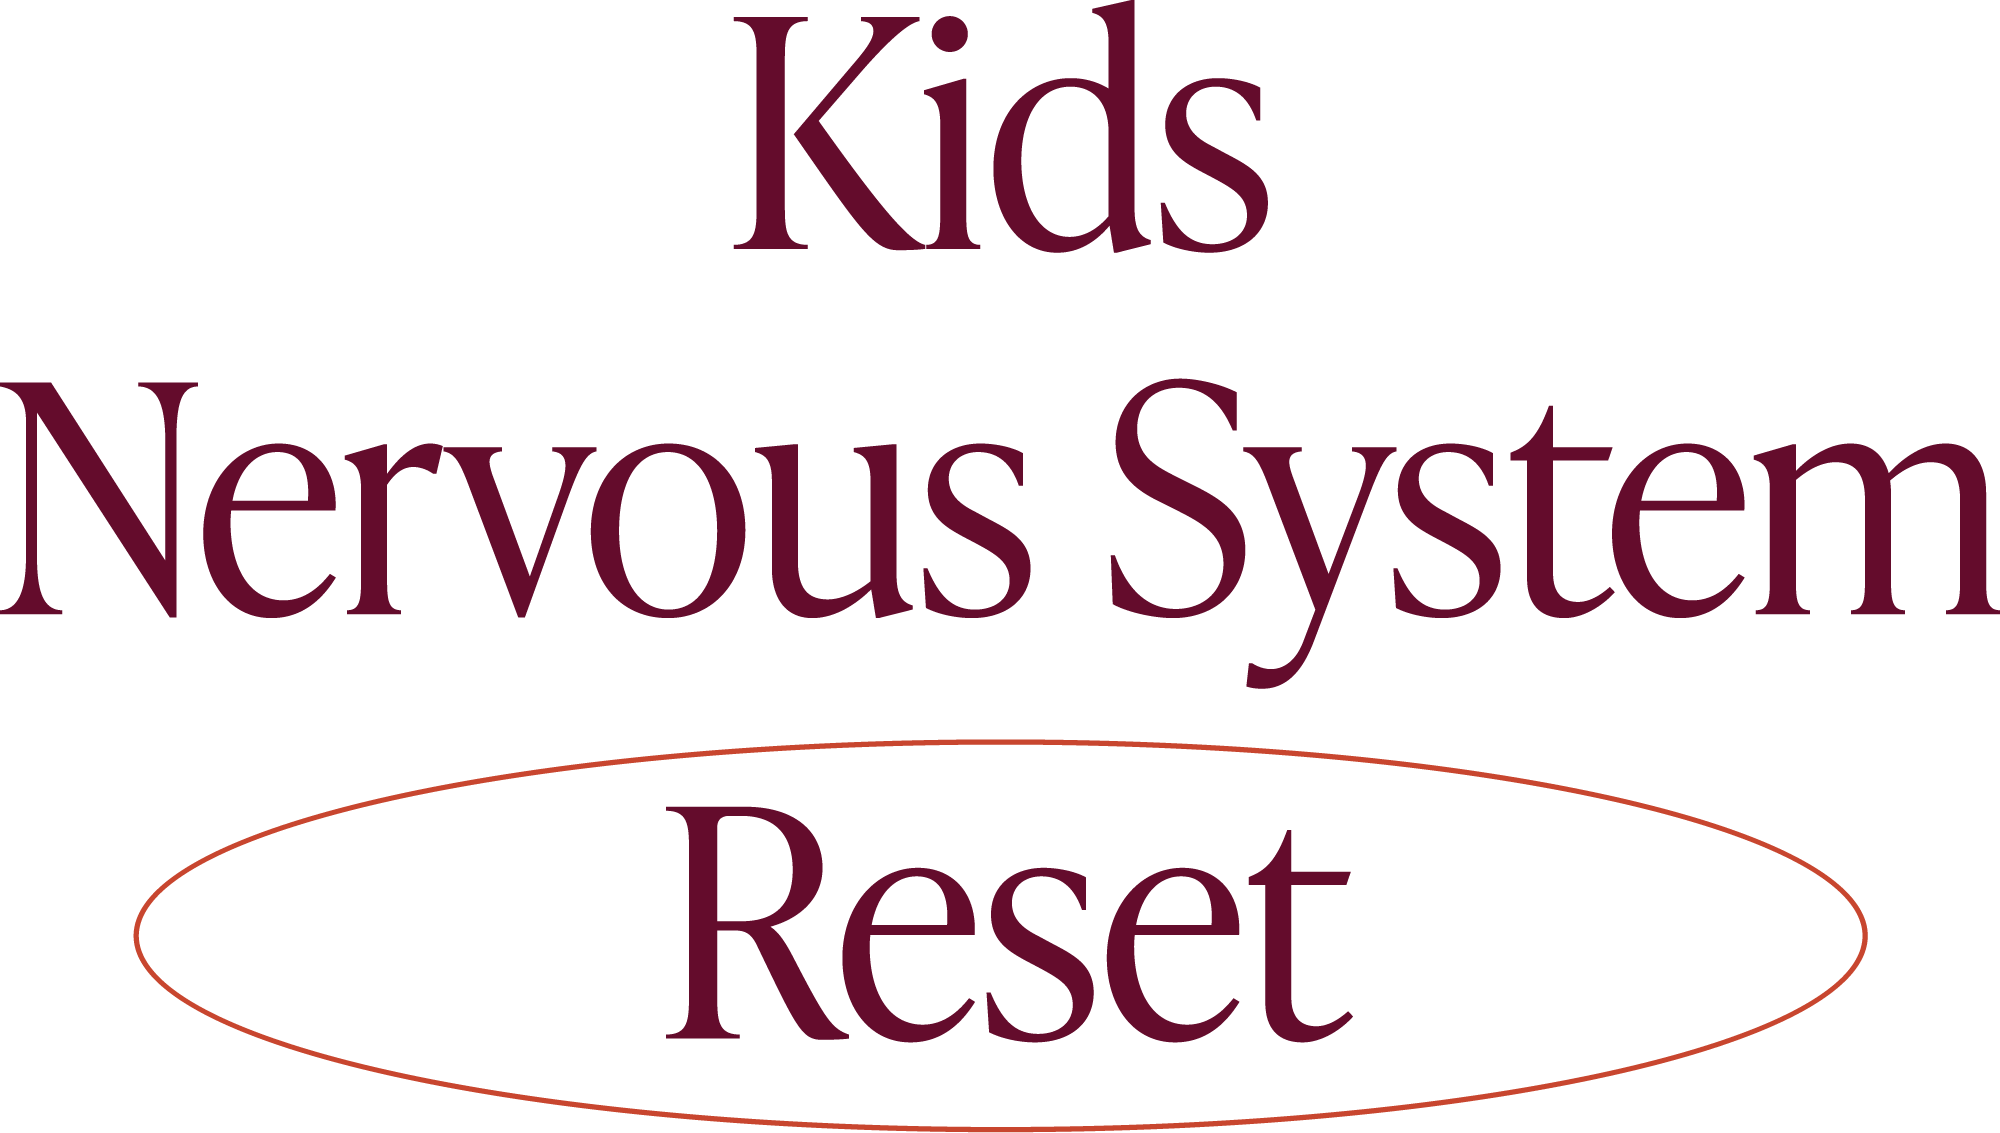 Kids Nervous System Reset